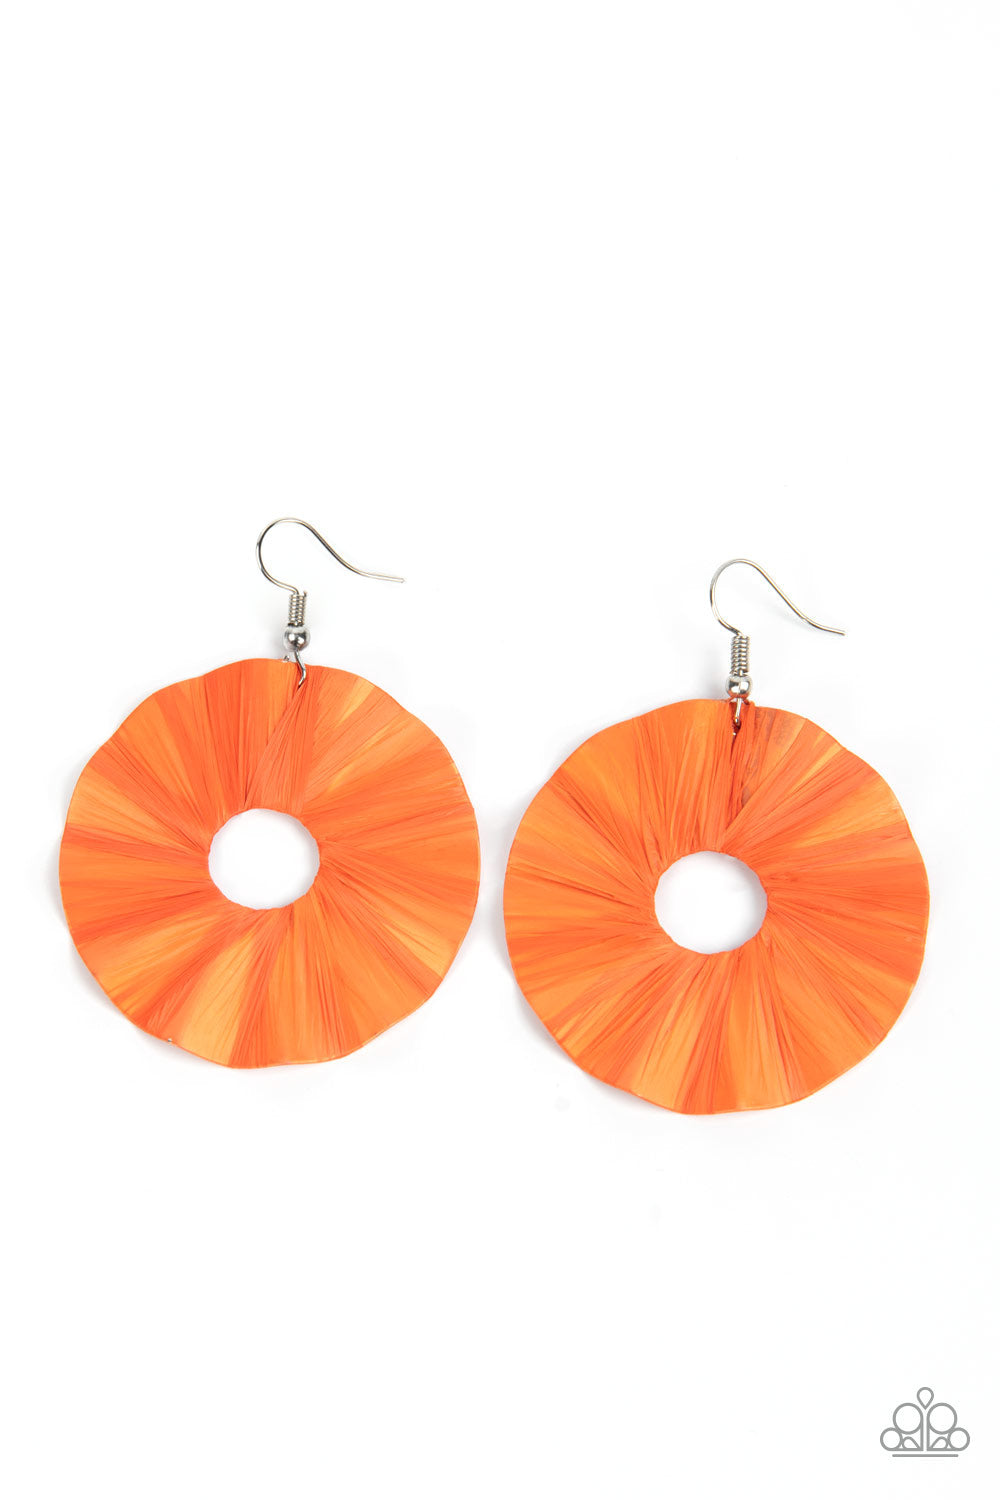 Fan the Breeze - Orange Earrings - Princess Glam Shop